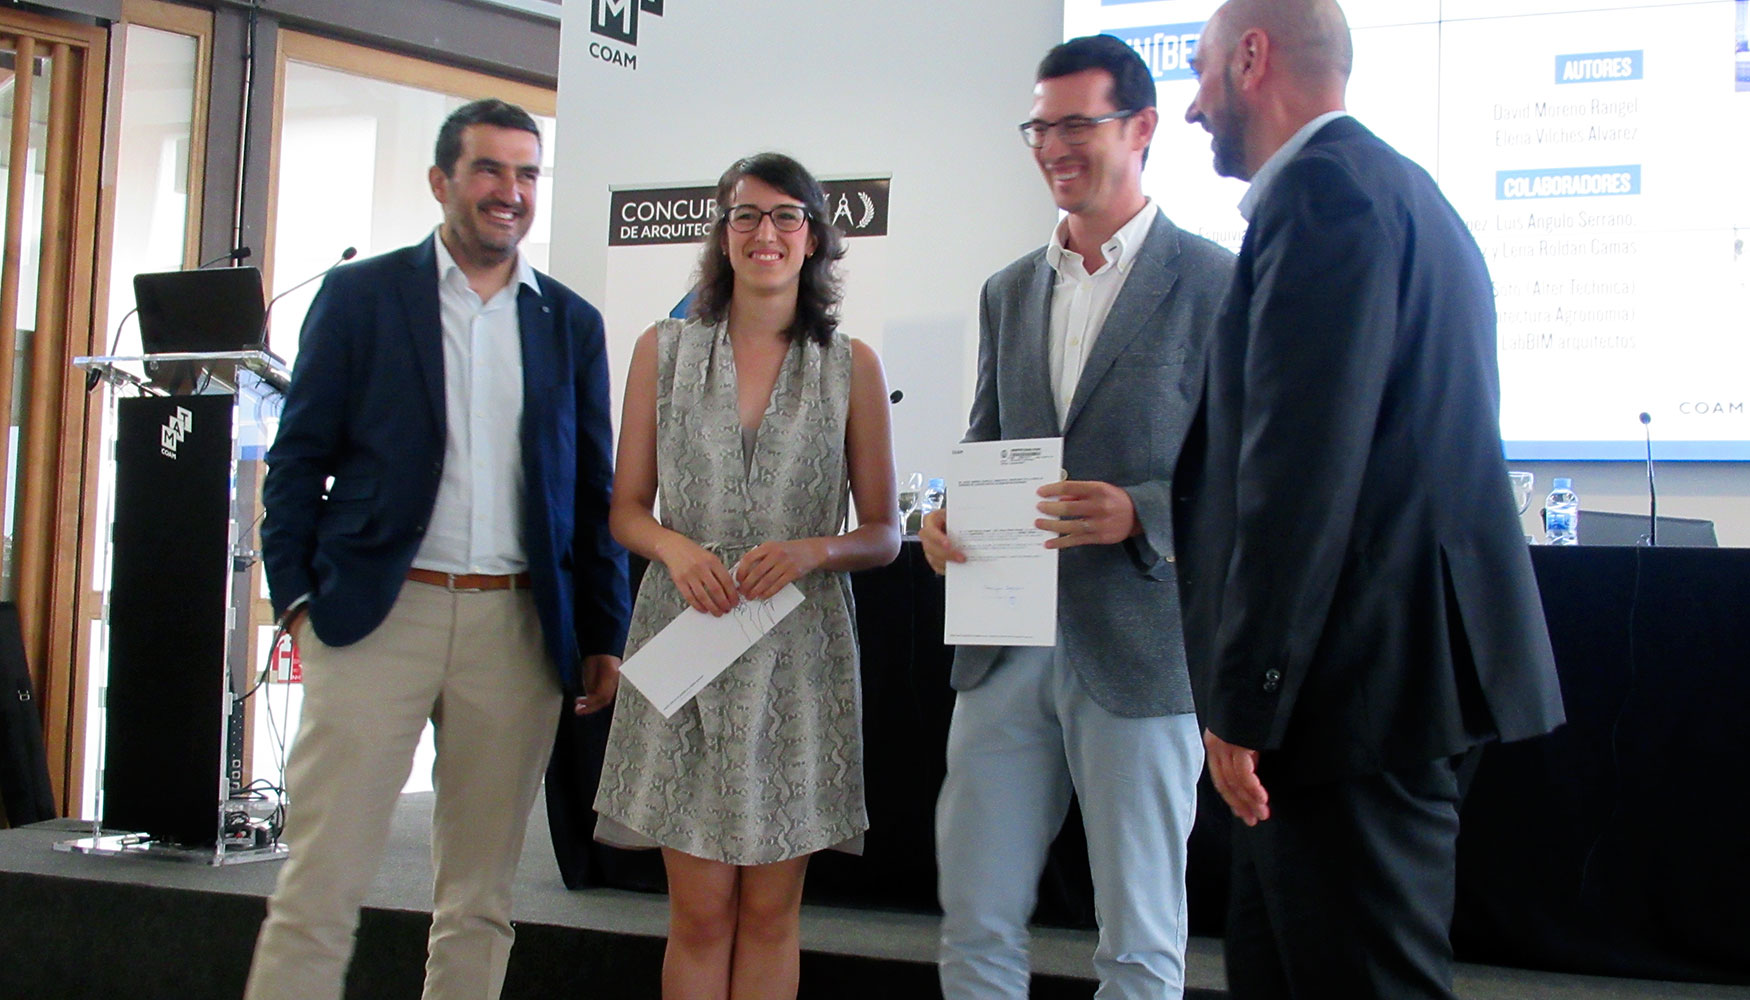 David Moreno y Elena Vilches, creadores del proyecto ganador, recogen el premio del concurso de la mano de los gerentes de profine Iberia...